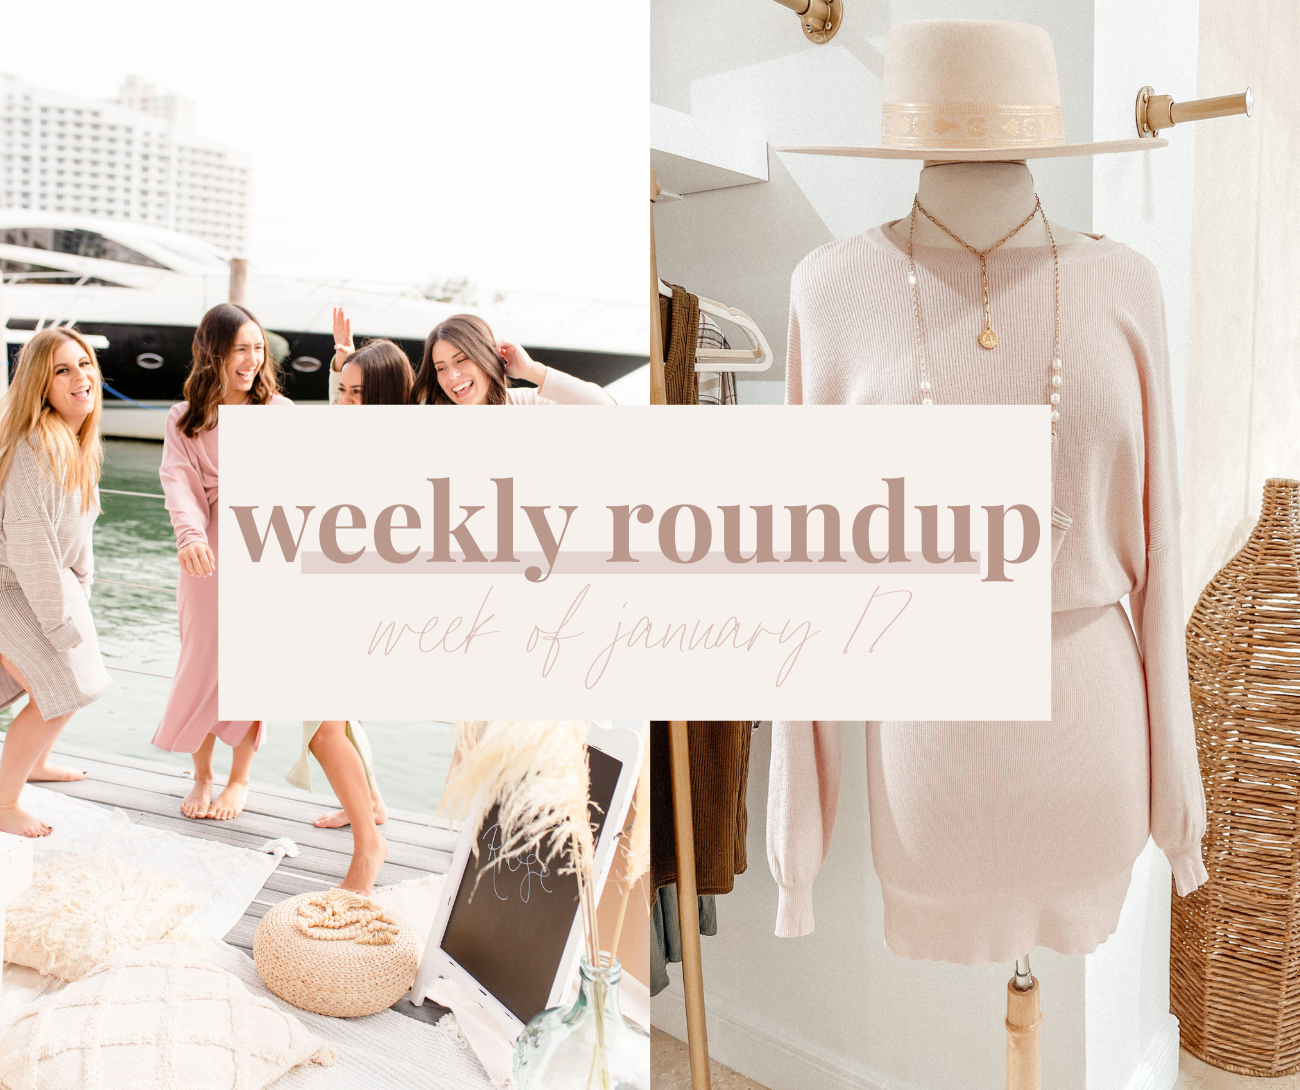 Weekly Roundup - Week of January 17